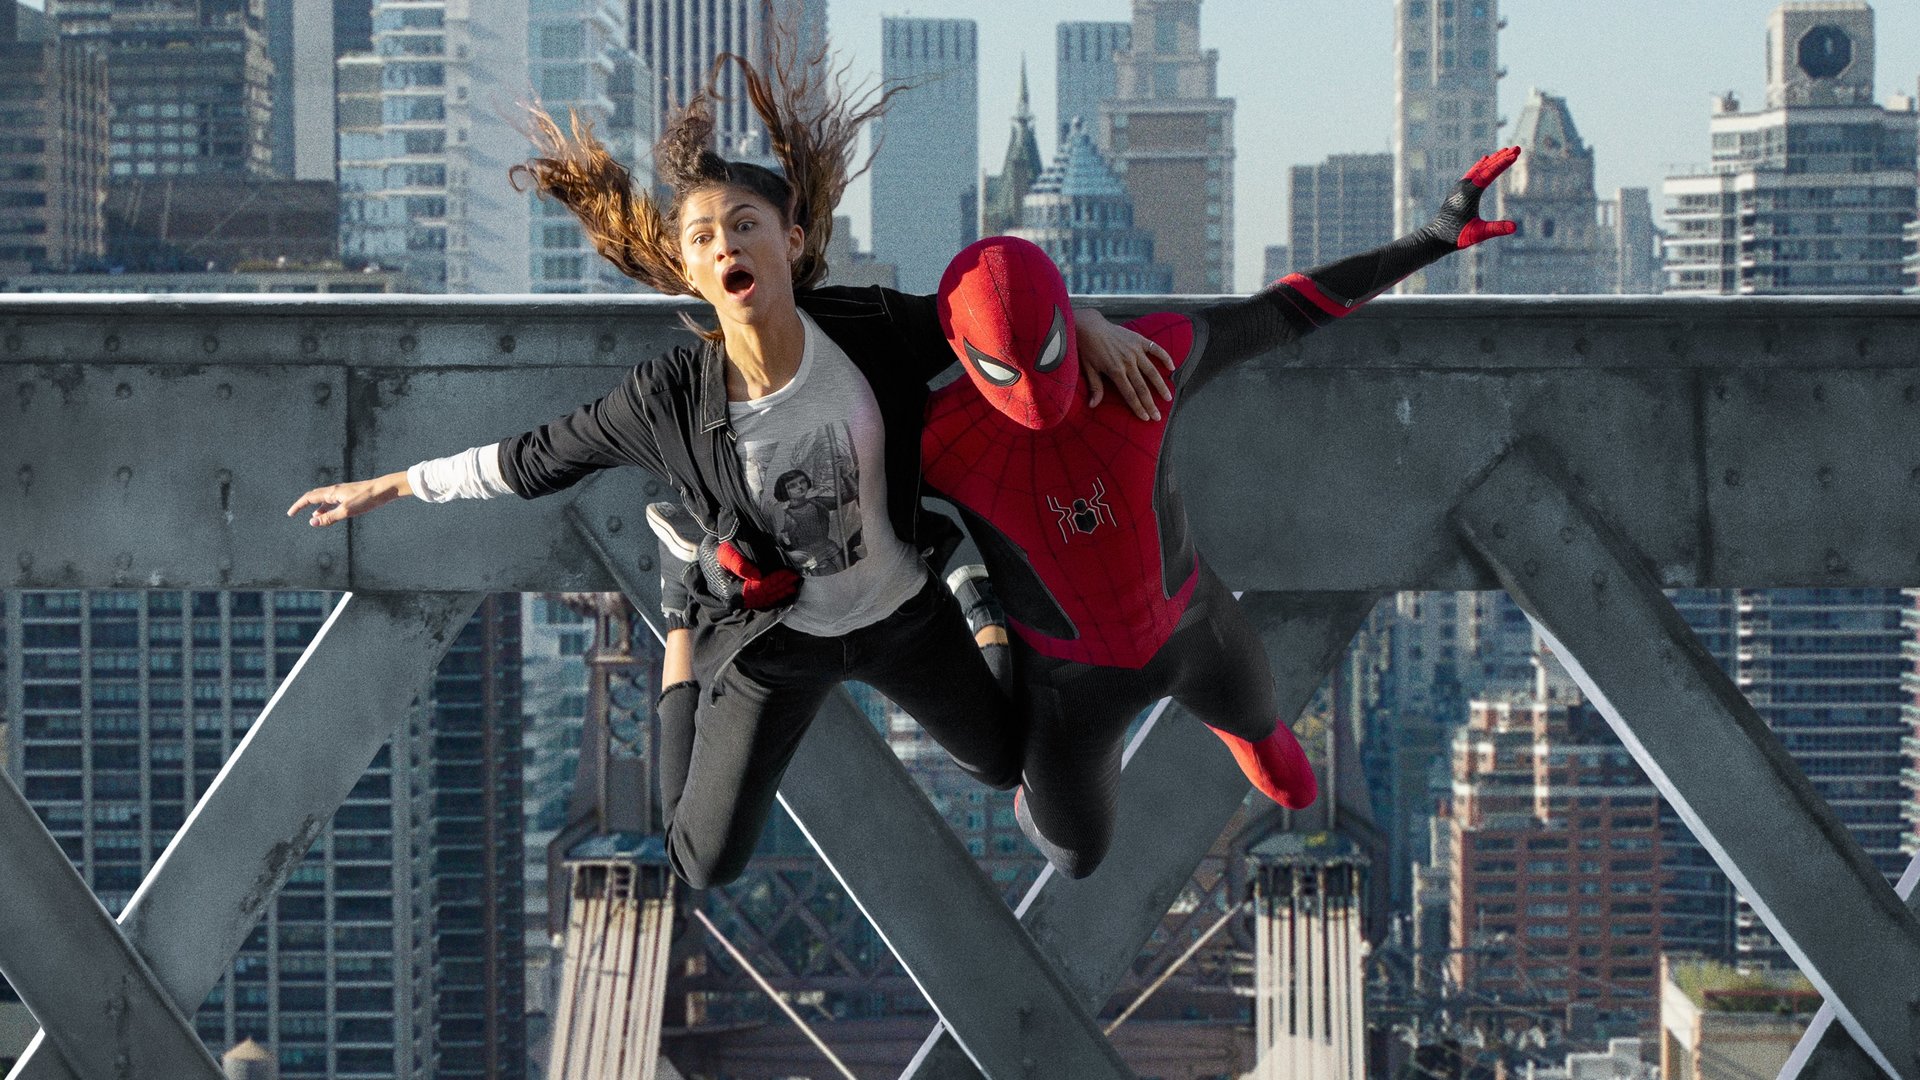 #Dieses Marvel-Foto sorgt für Furore: „Spider-Man“-Darsteller stellen ikonischstes Meme nach